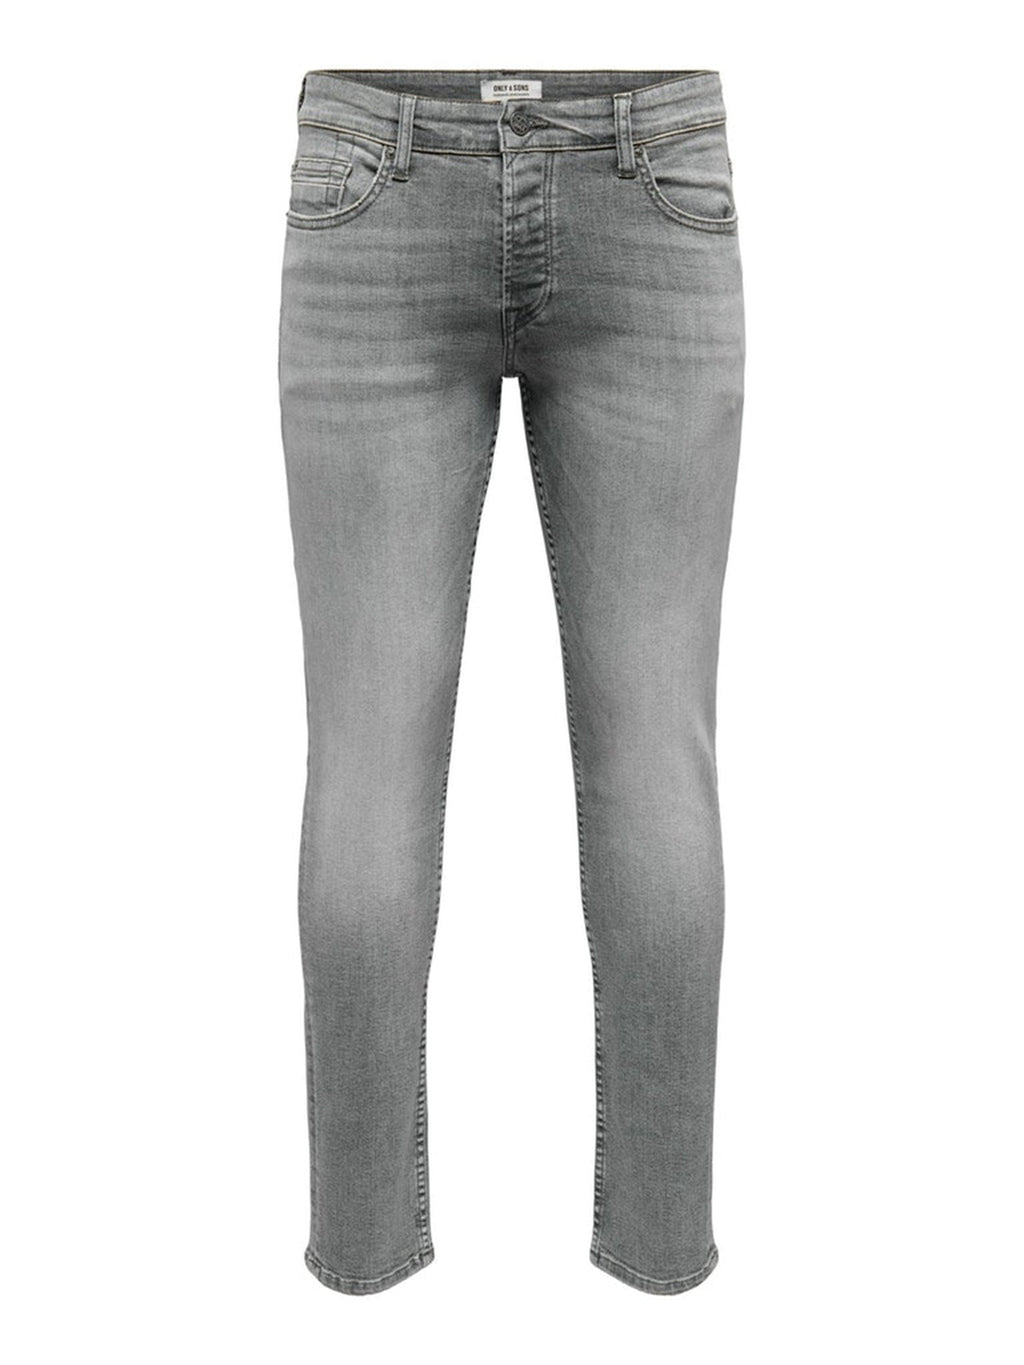 Webstuhl schlanke graue Jeans - grau